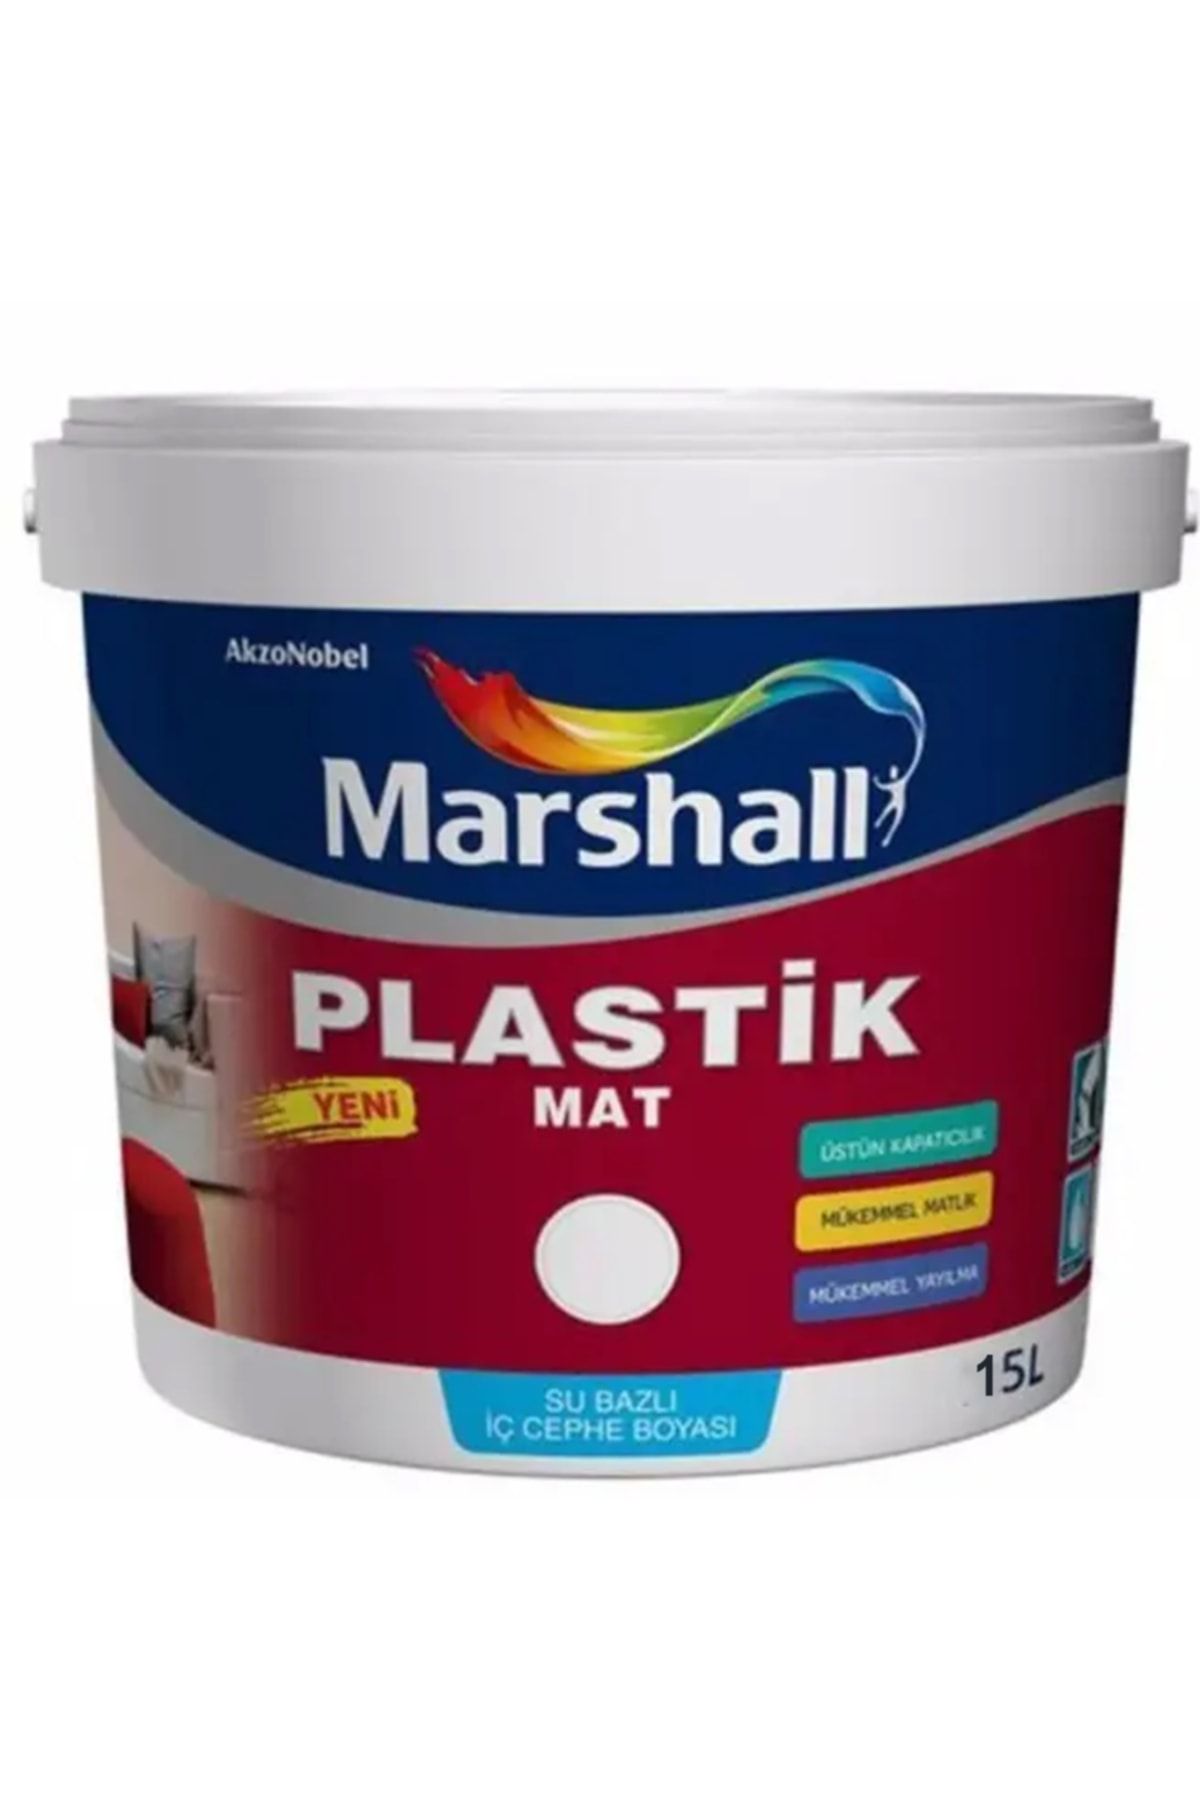 Marshall Plastik Mat Silinebilir Iç Cephe Boyası Akşam Sefası 15 Lt (20 Kg)